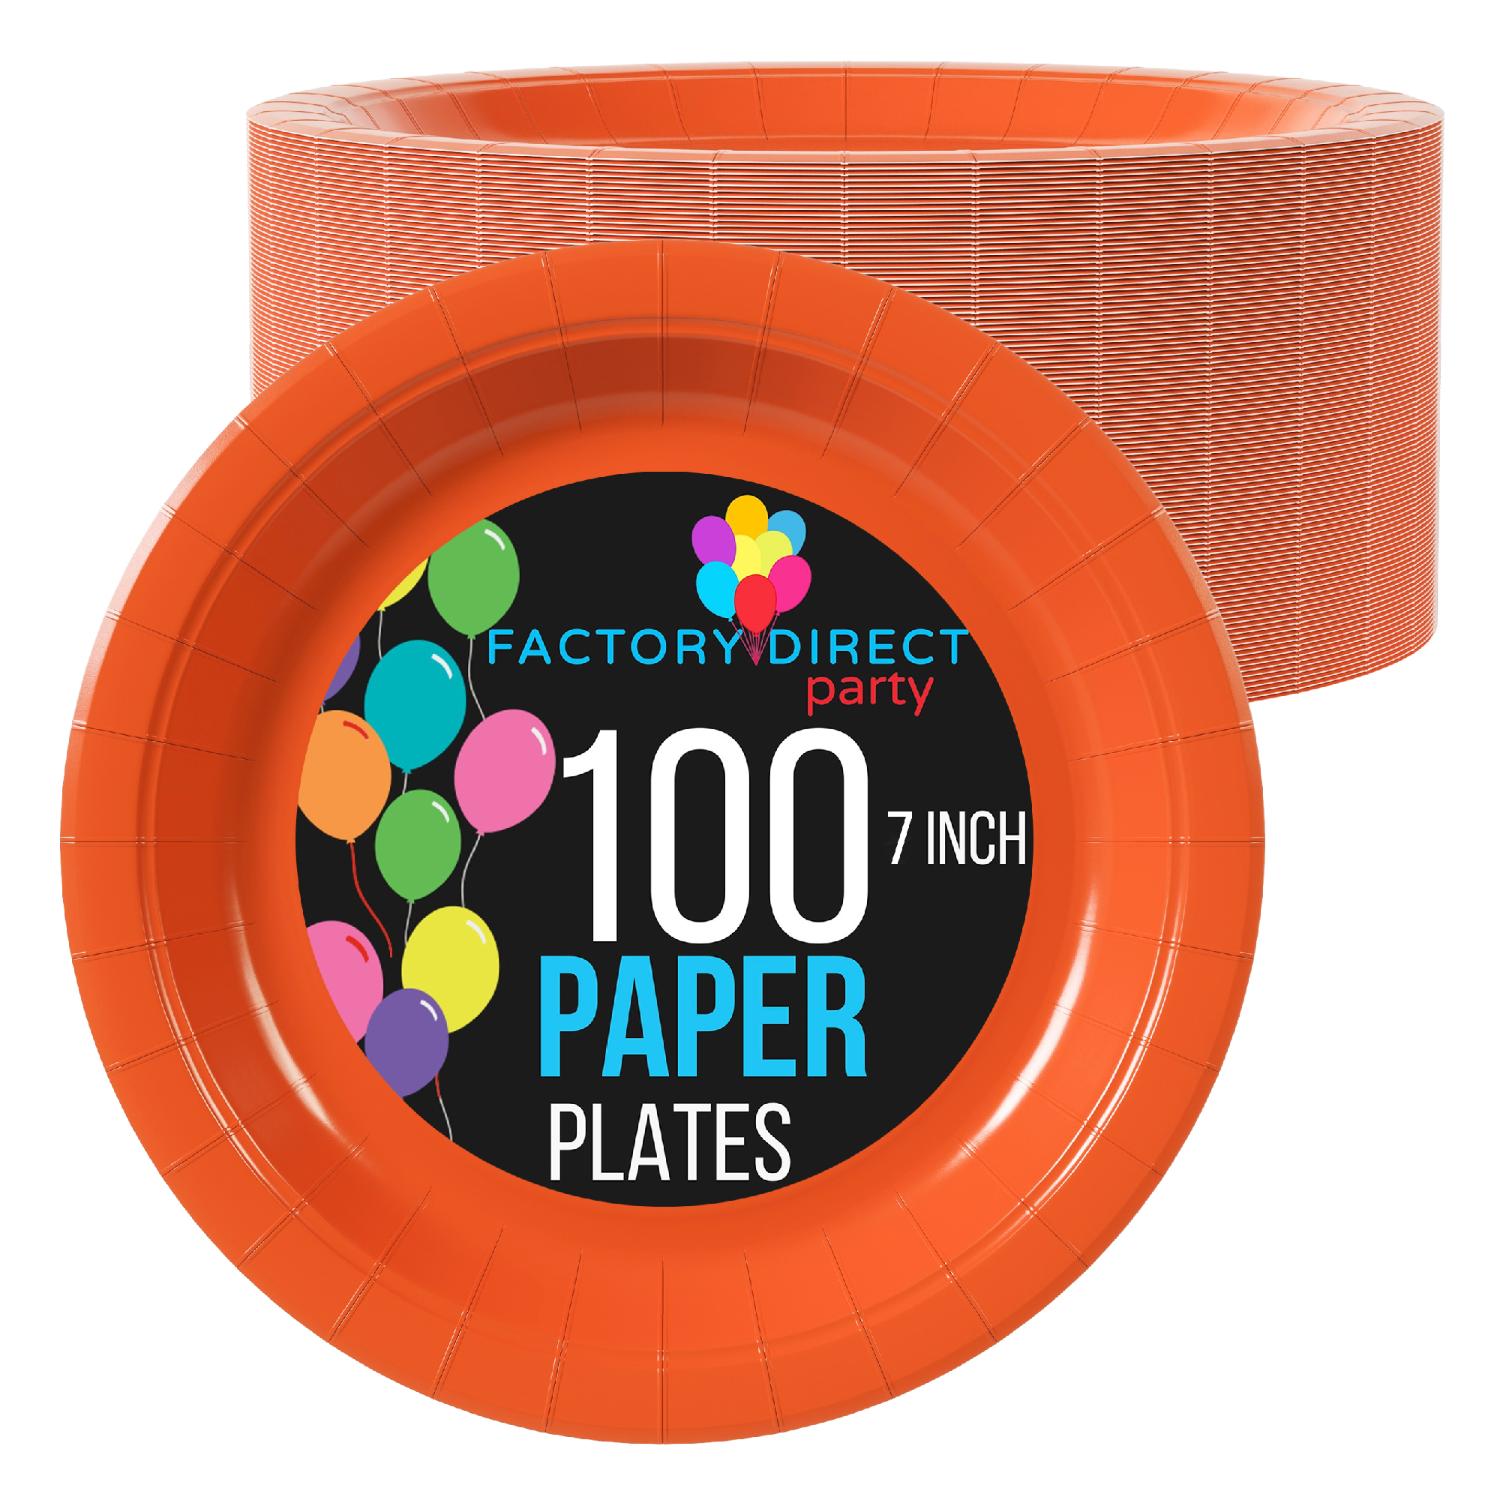 7 In. Orange Paper Plates - 100 Ct.